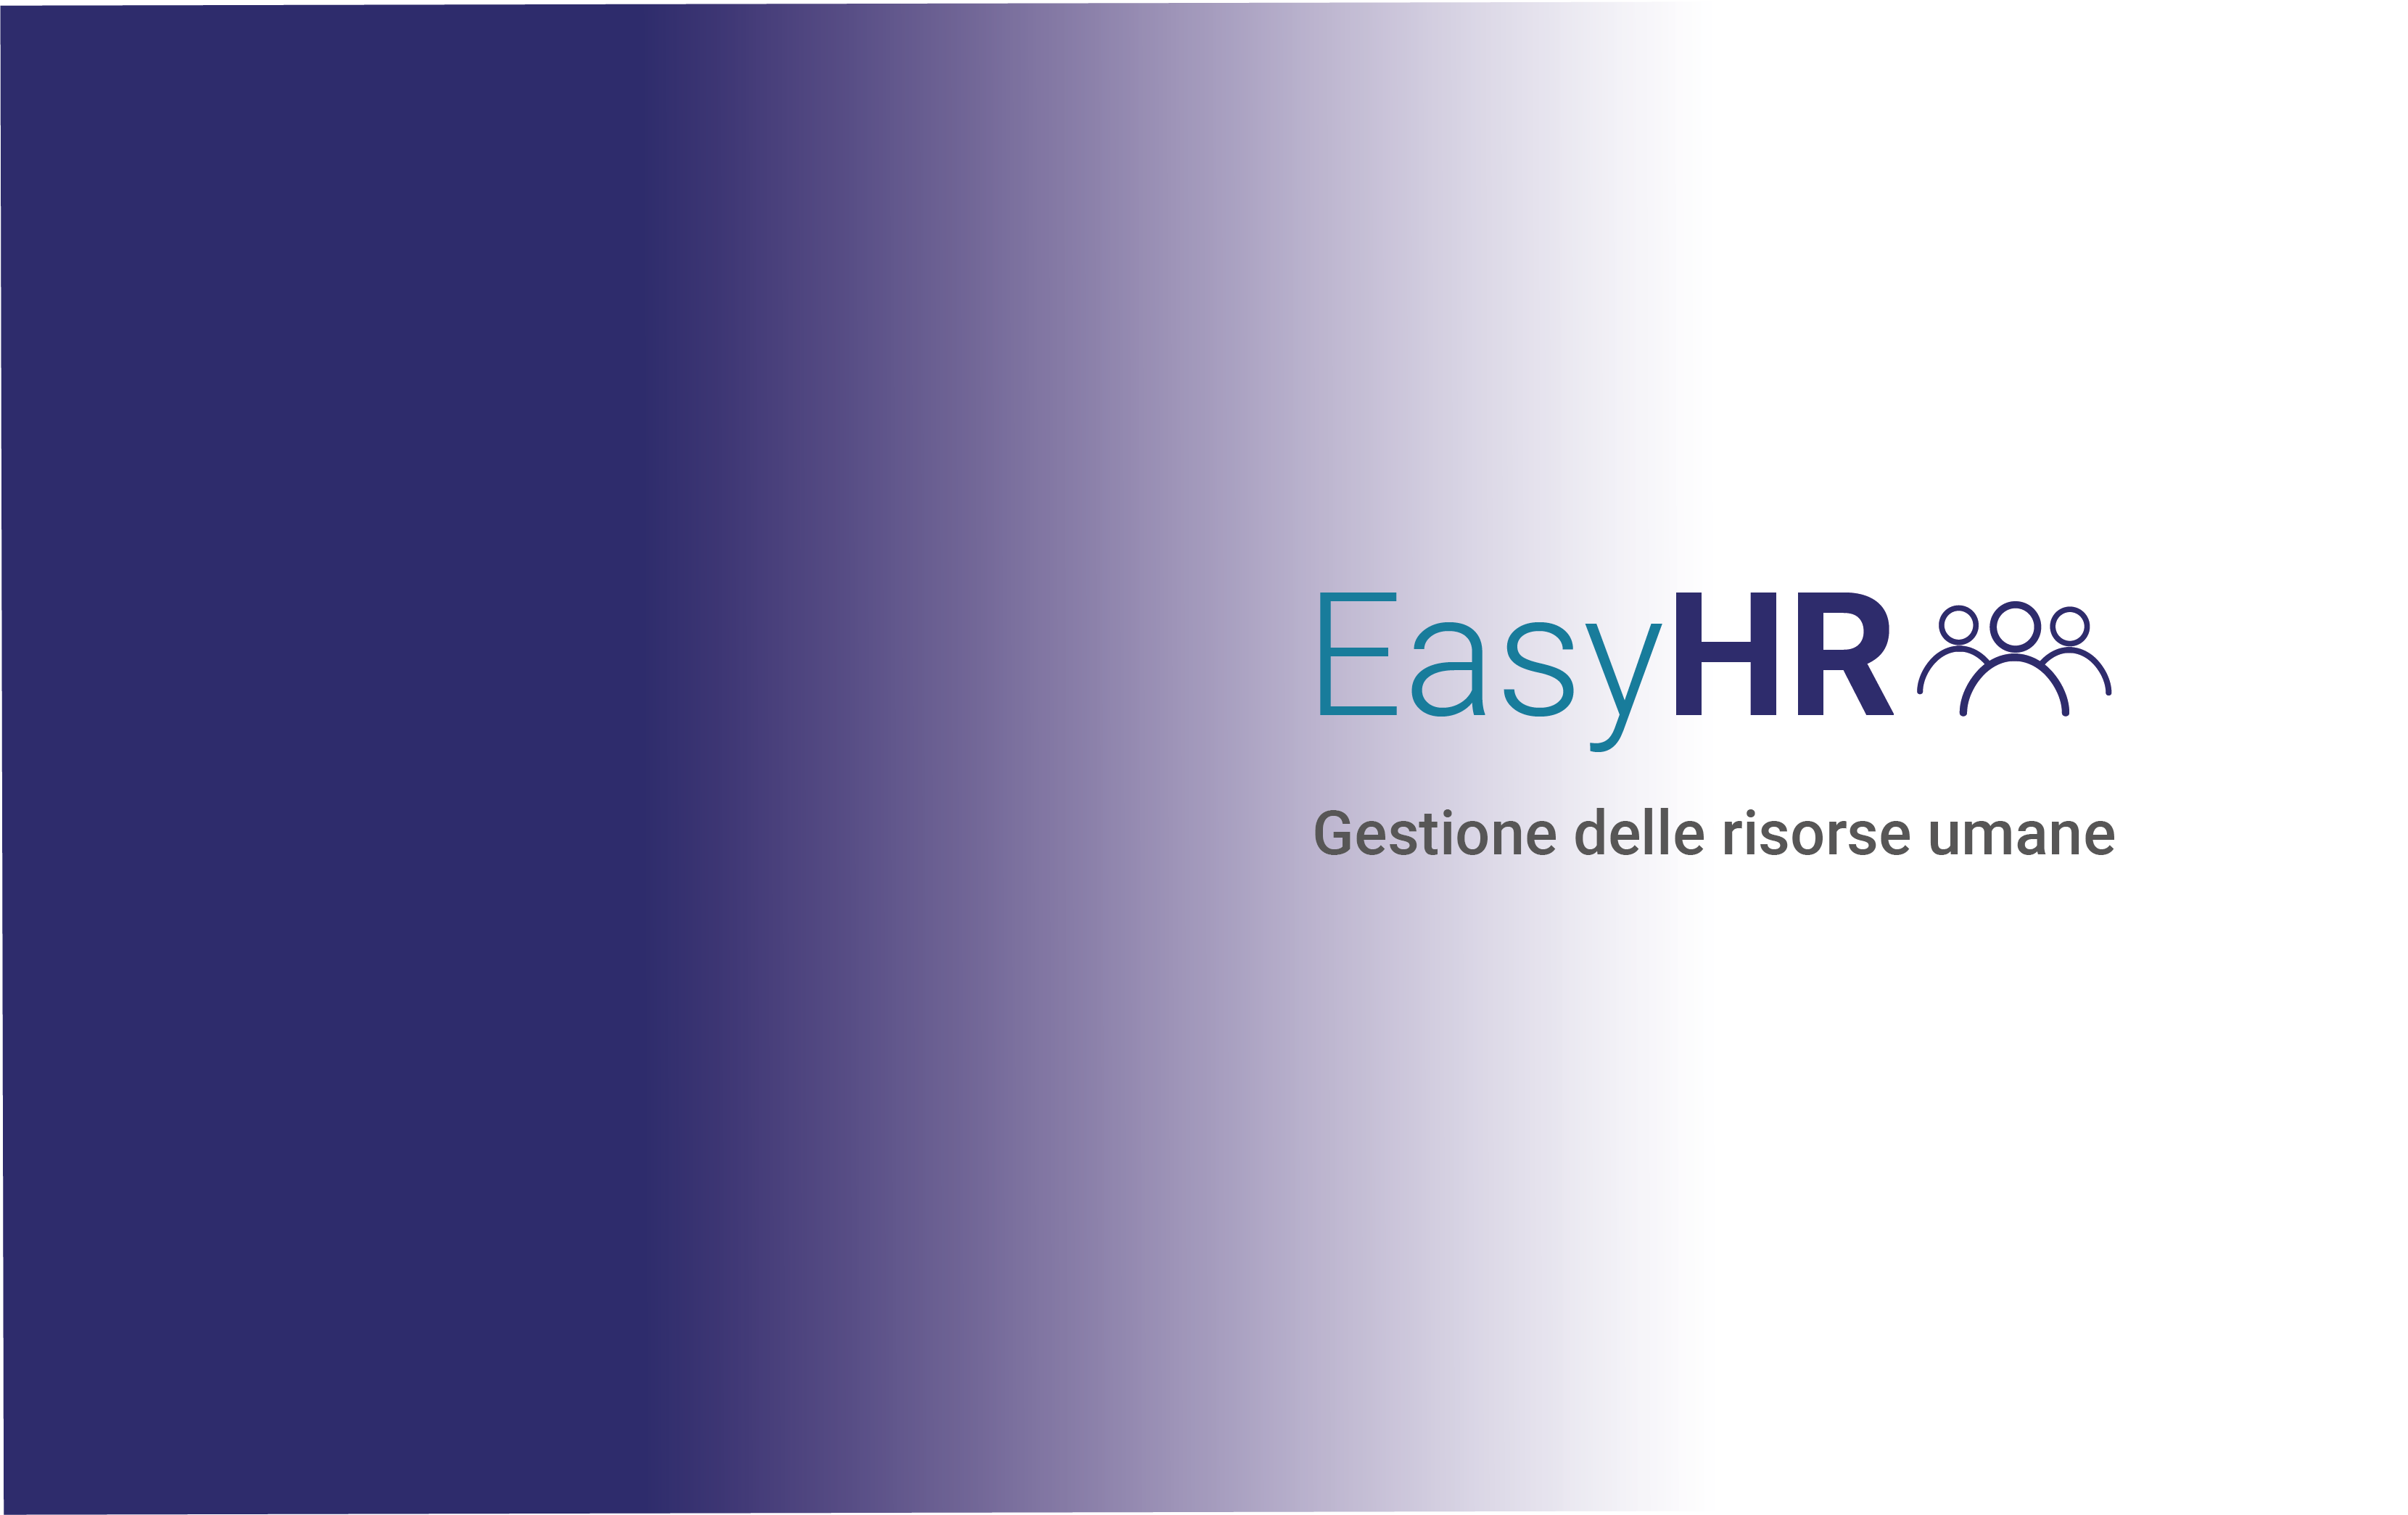 EasyHR: Semplificare la gestione del personale in modo sicuro ed efficiente